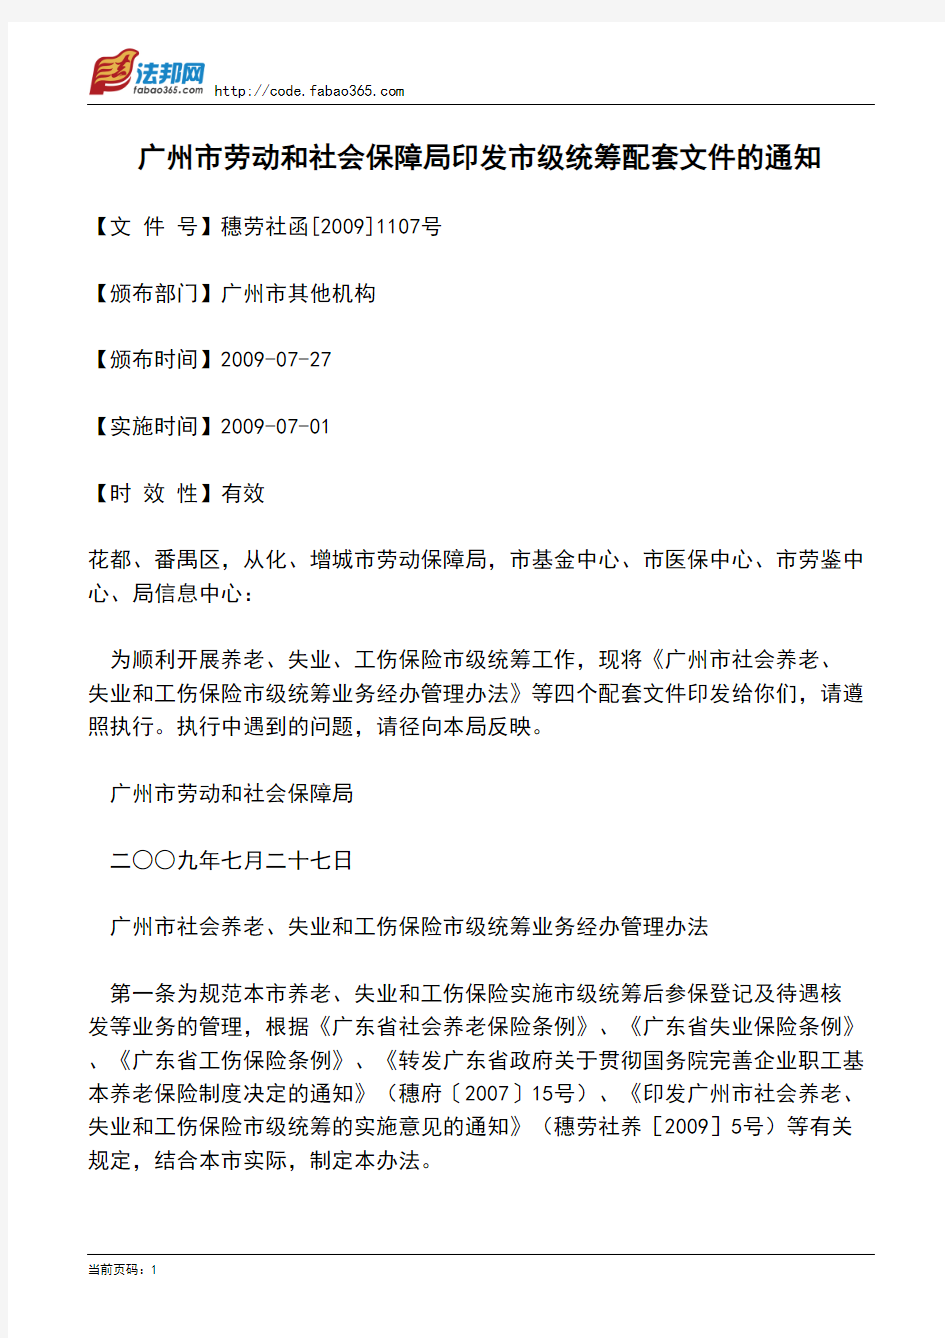 广州市劳动和社会保障局印发市级统筹配套文件的通知